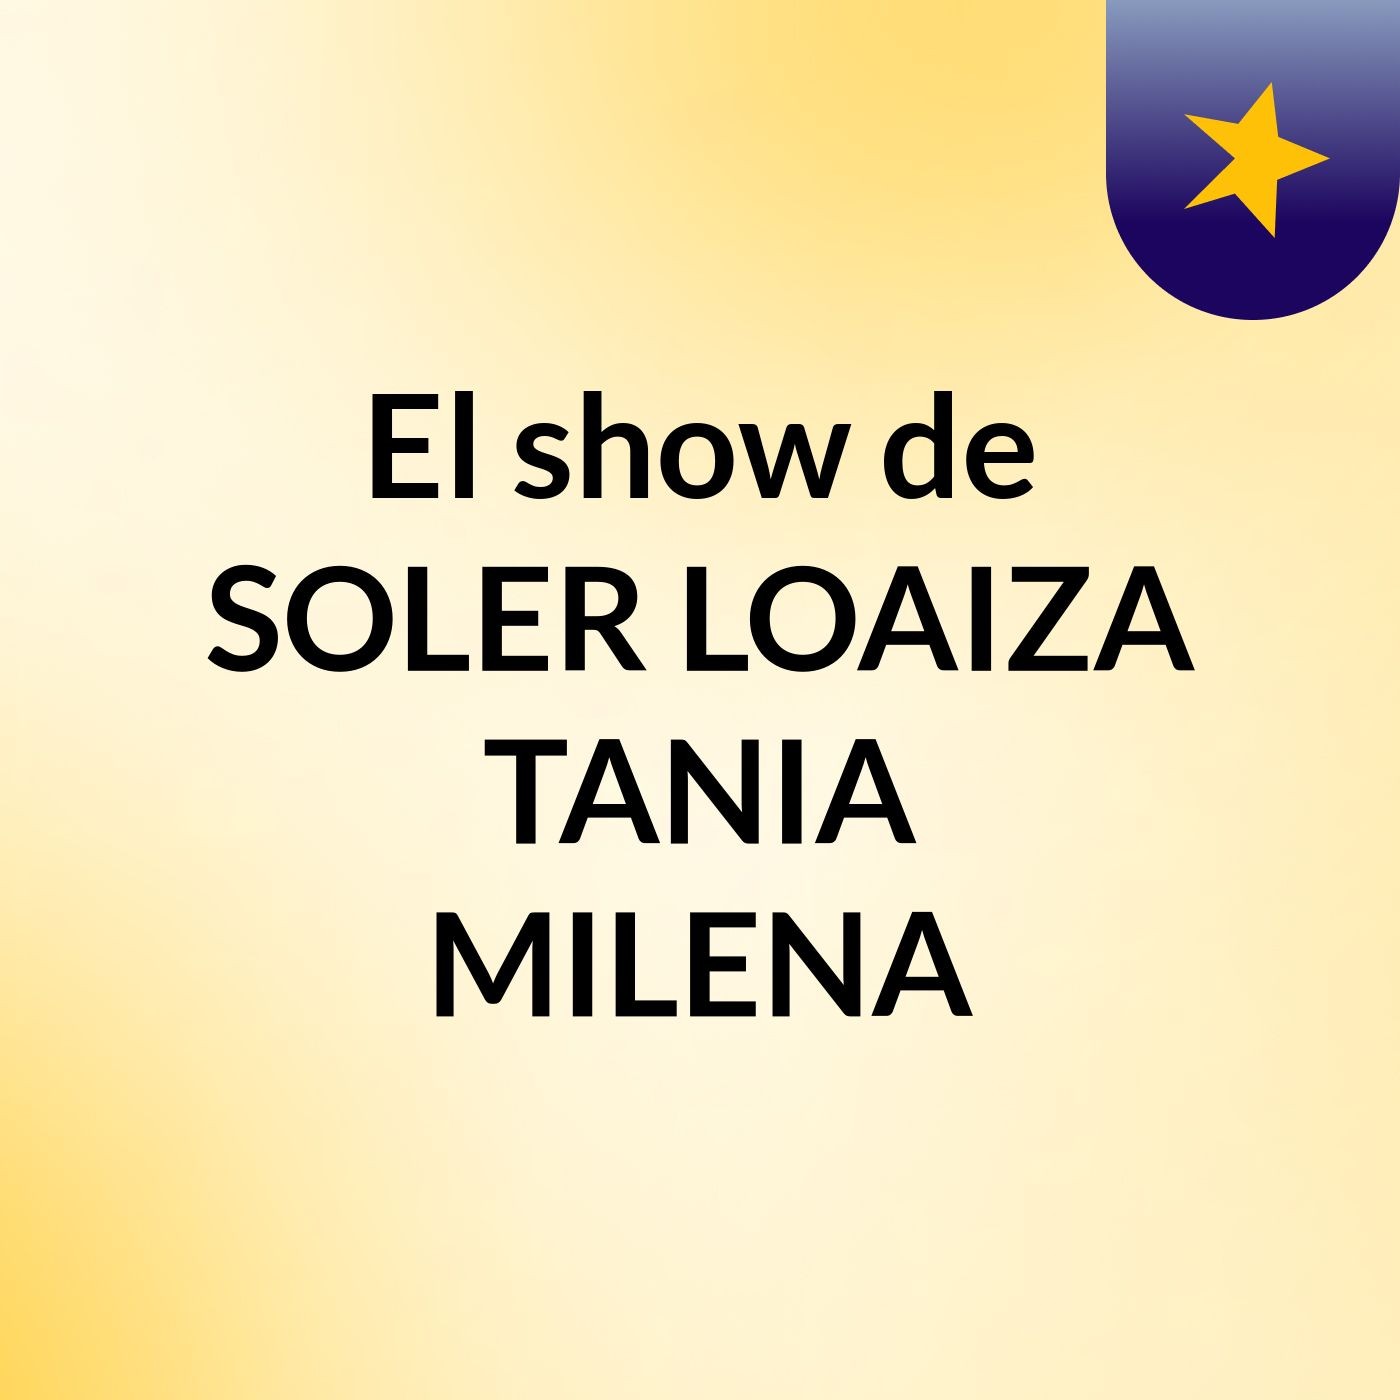 El show de SOLER LOAIZA TANIA MILENA